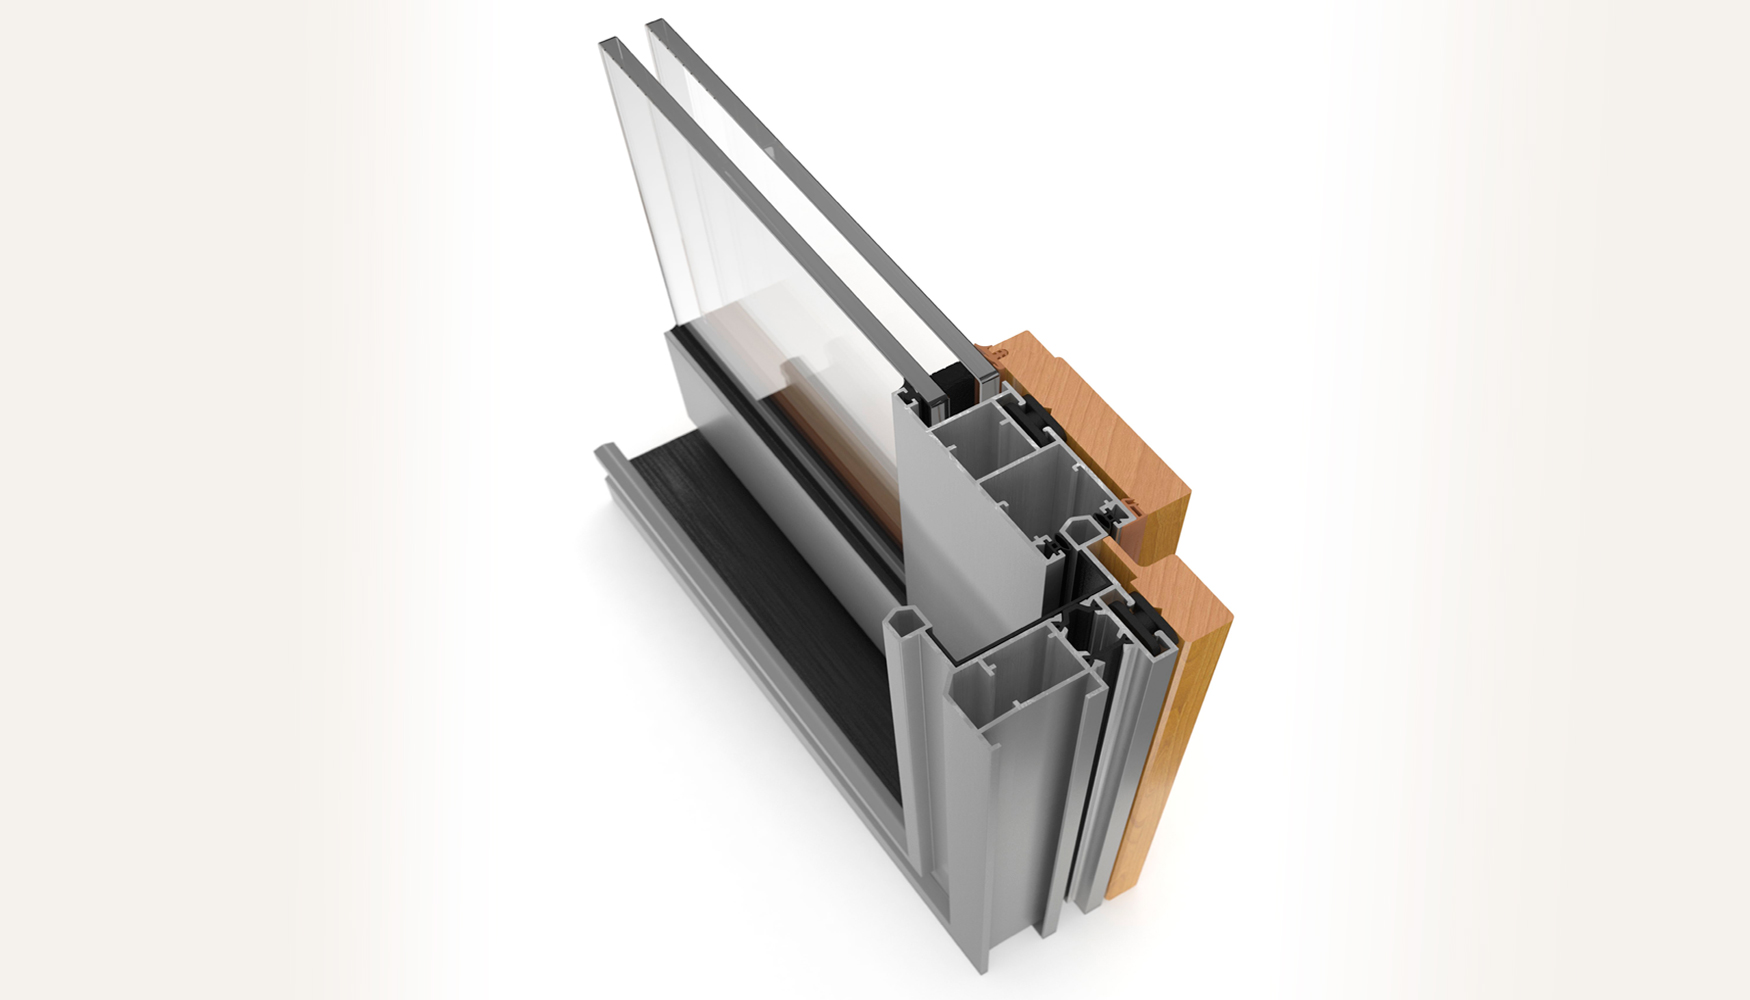 Los nuevos sistemas de corredera de exlabesa combinan madera y aluminio, un sistema que rene las ventajas de los dos materiales...